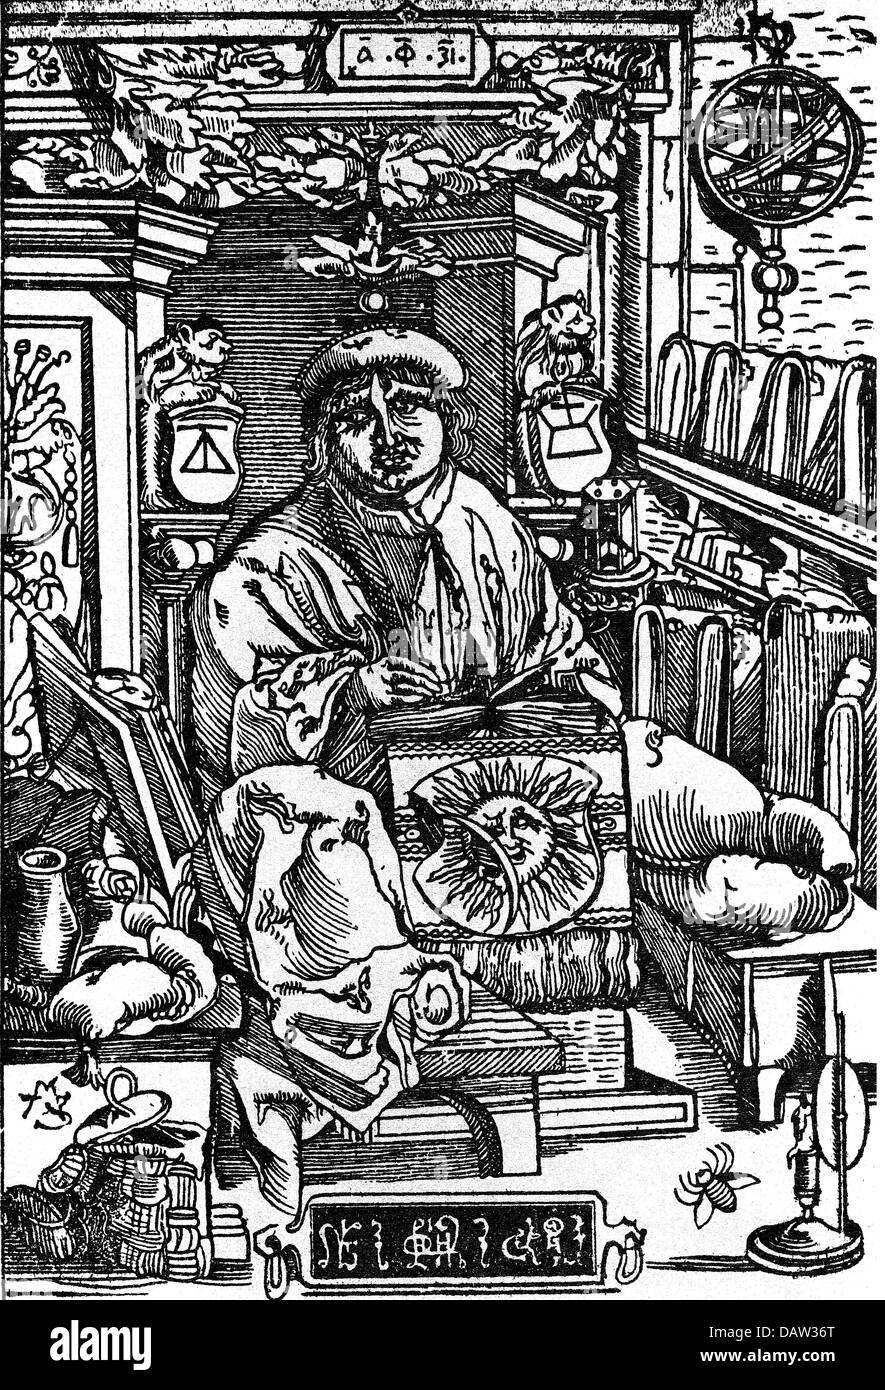 Skaryna, Franciscus, 6.3.1486 - Mai 1541, weißrussischer Mediziner, Druckarbeiter, Verleger, volle Länge, Eigenhalblänge, Holzschnitt, 1531, Stockfoto